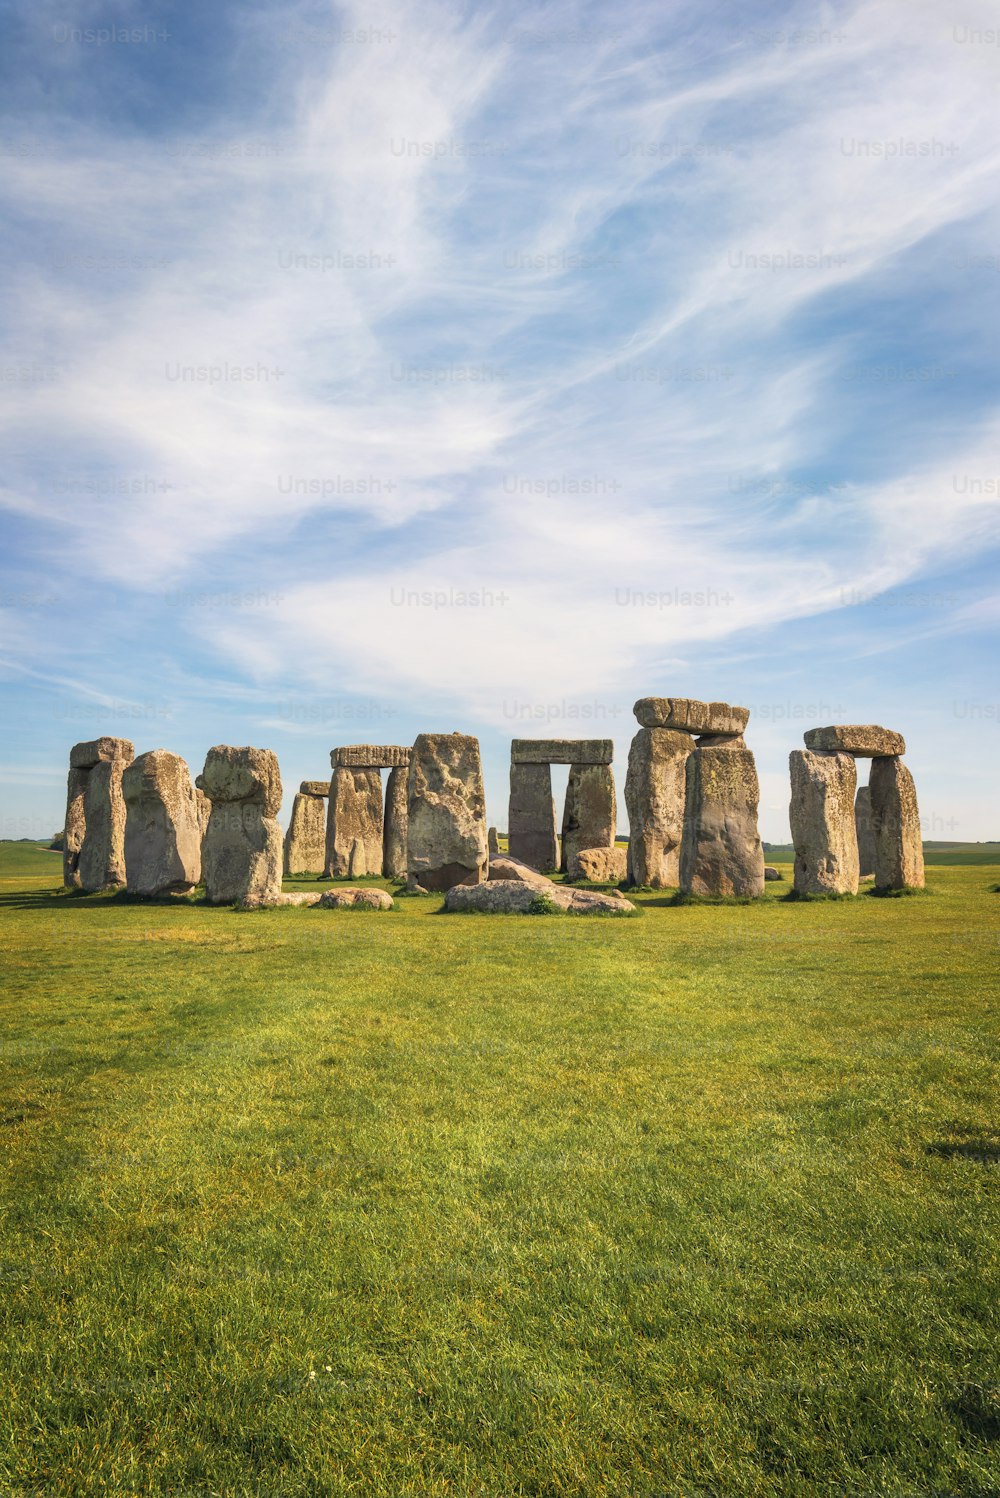 스톤헨지 (Stonehenge) 는 유네스코 세계 문화 유산 인 솔즈베리 (Salisbury) 근처의 고대 선사 시대 석조 기념물입니다.